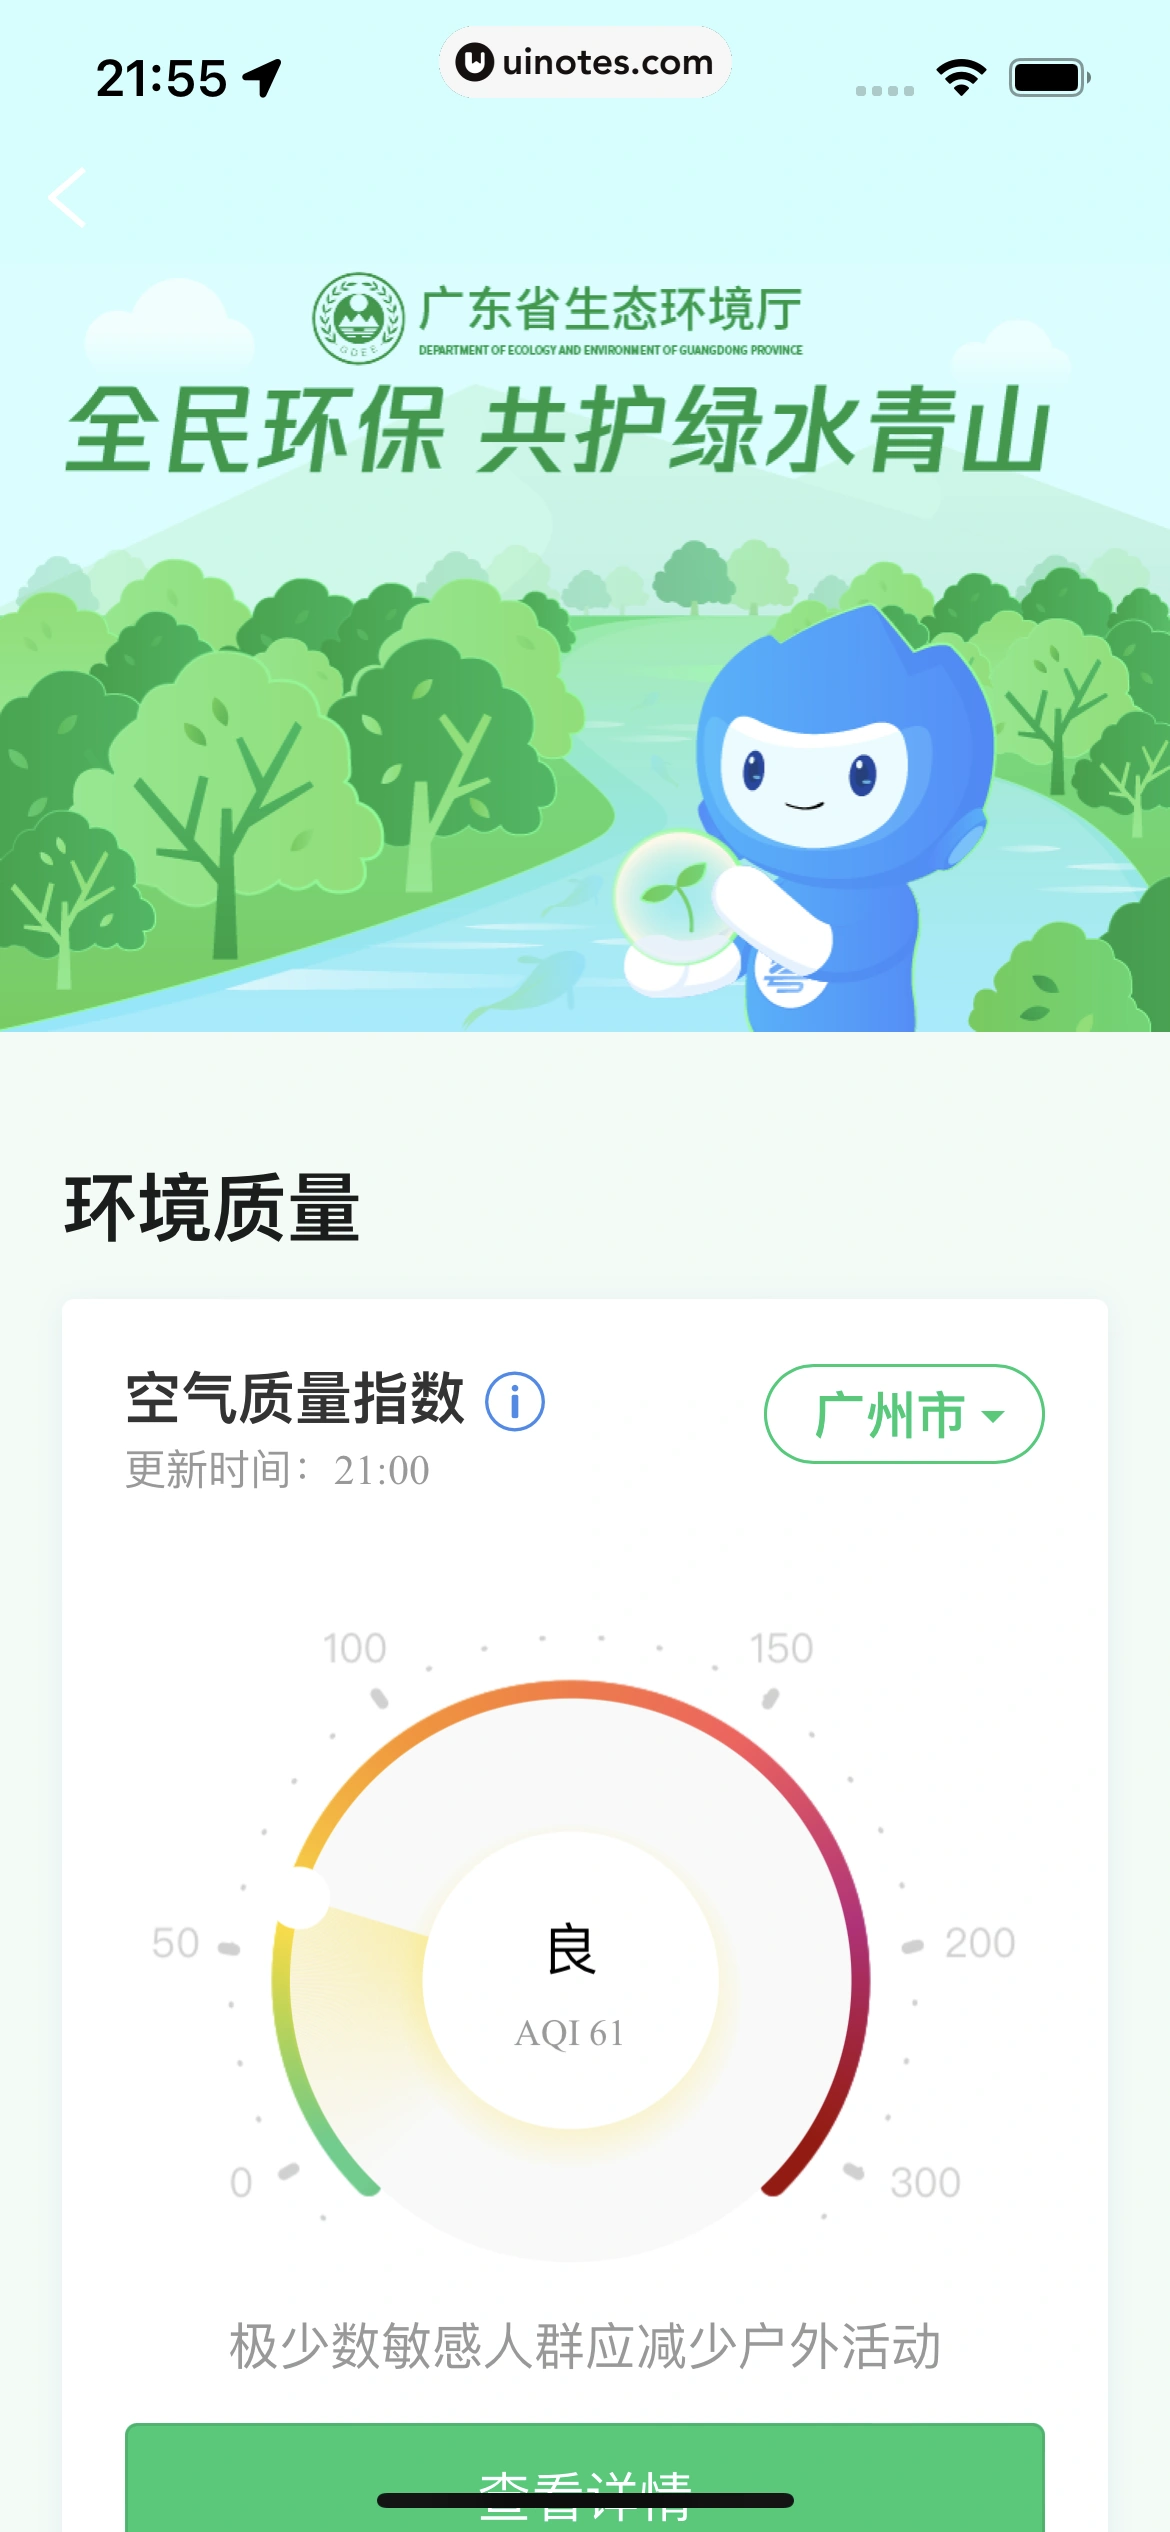 粤省事 App 截图 099 - UI Notes